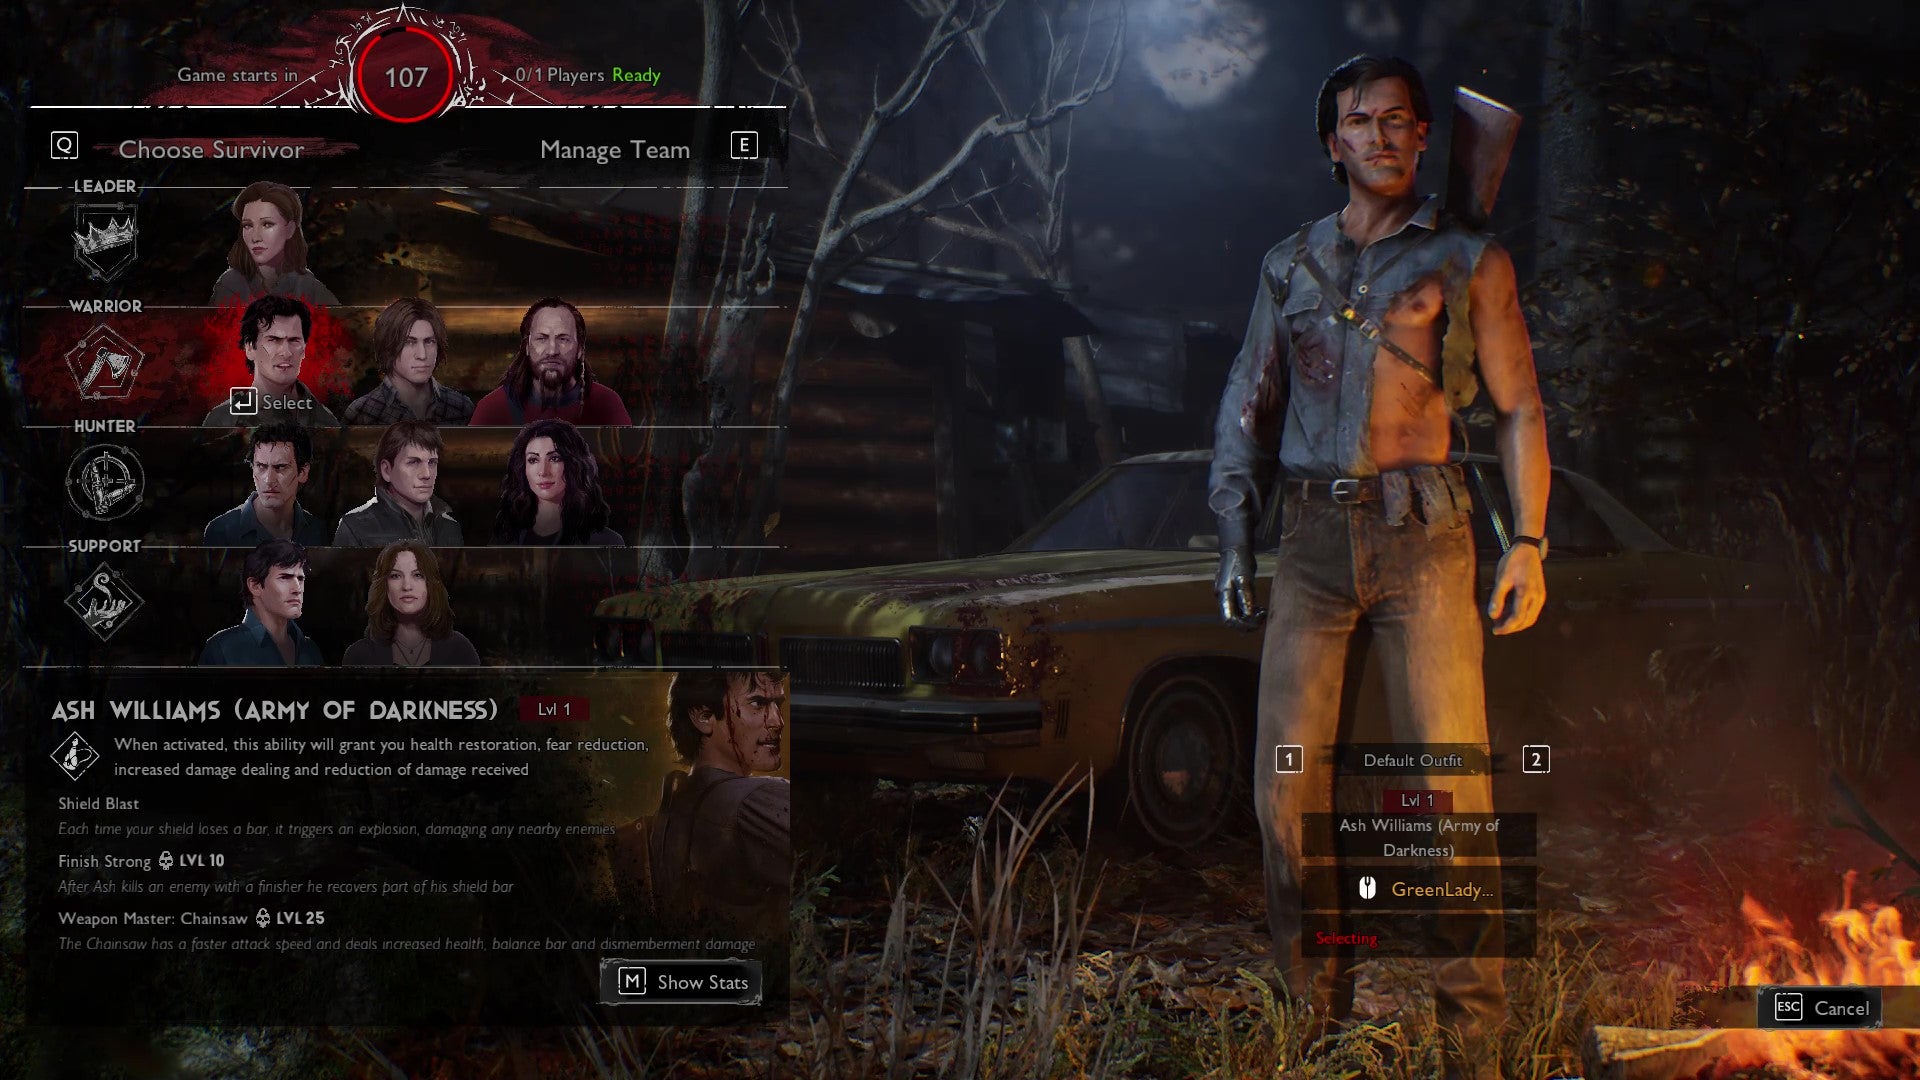 A tela de seleção de jogadores de Evil Dead: The Game, com Ash Williams (Army of Darkness) selecionado por um jogador Survivor.